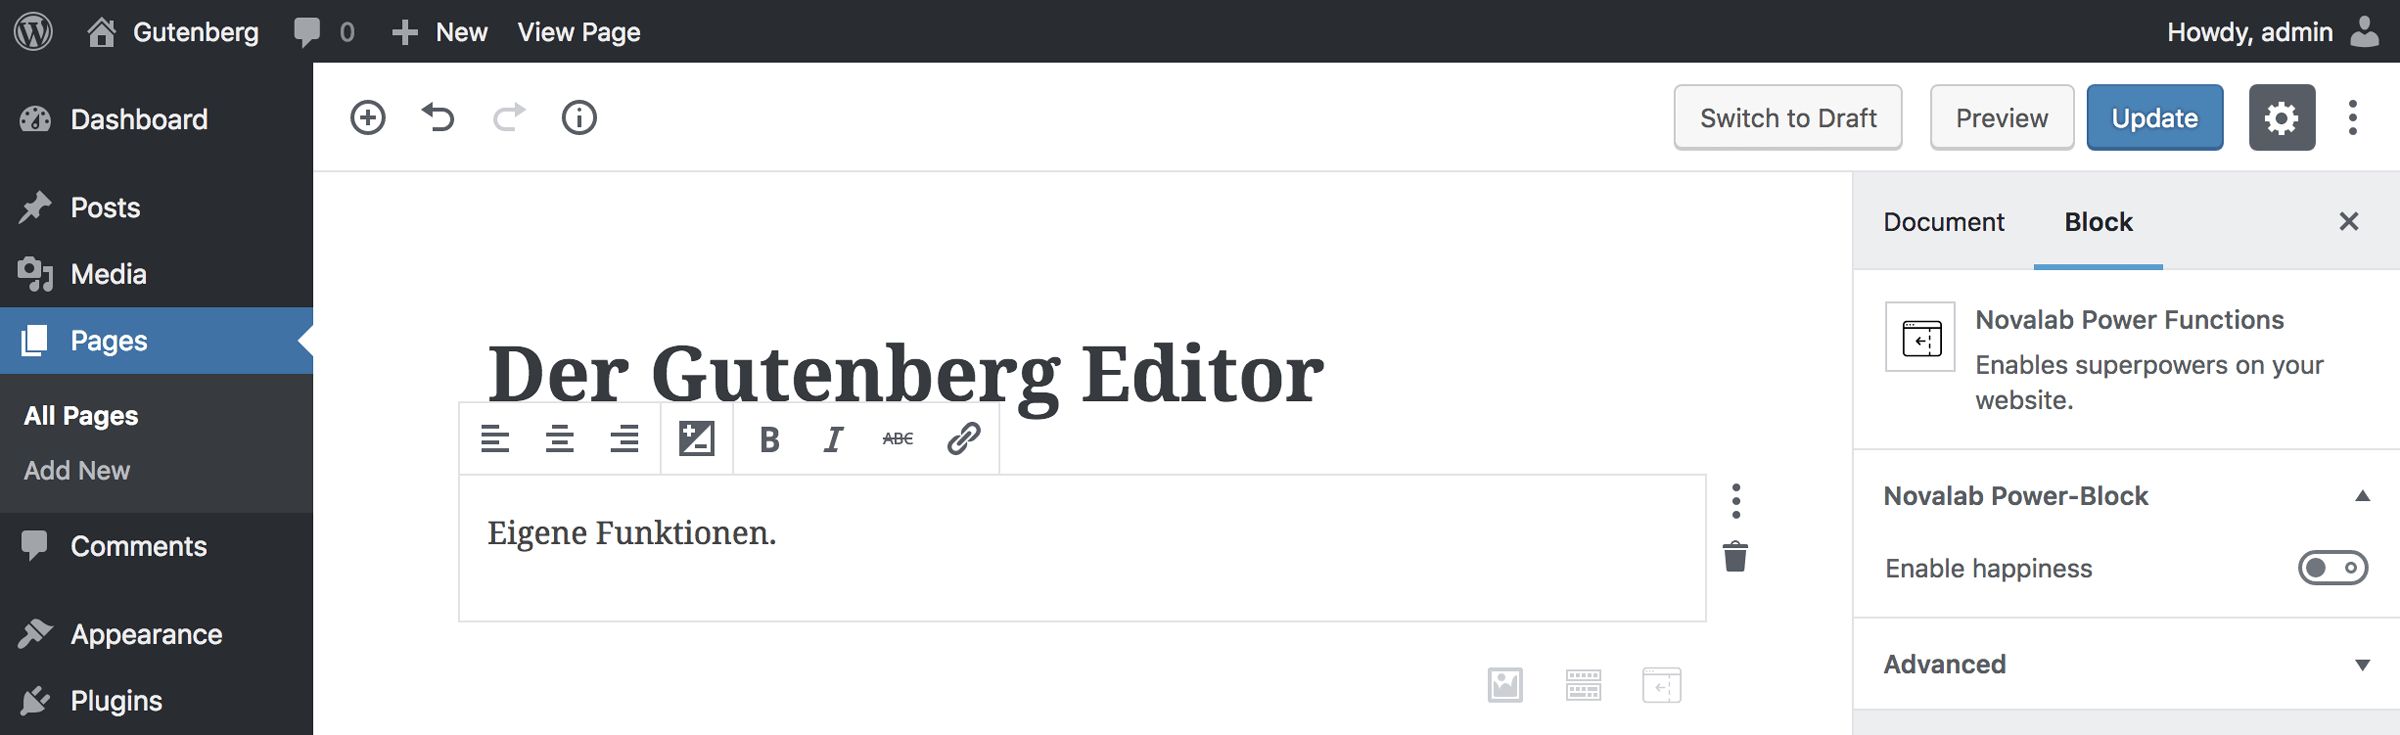 Gutenberg Editor mit individuellem Block und Seitensteuerung